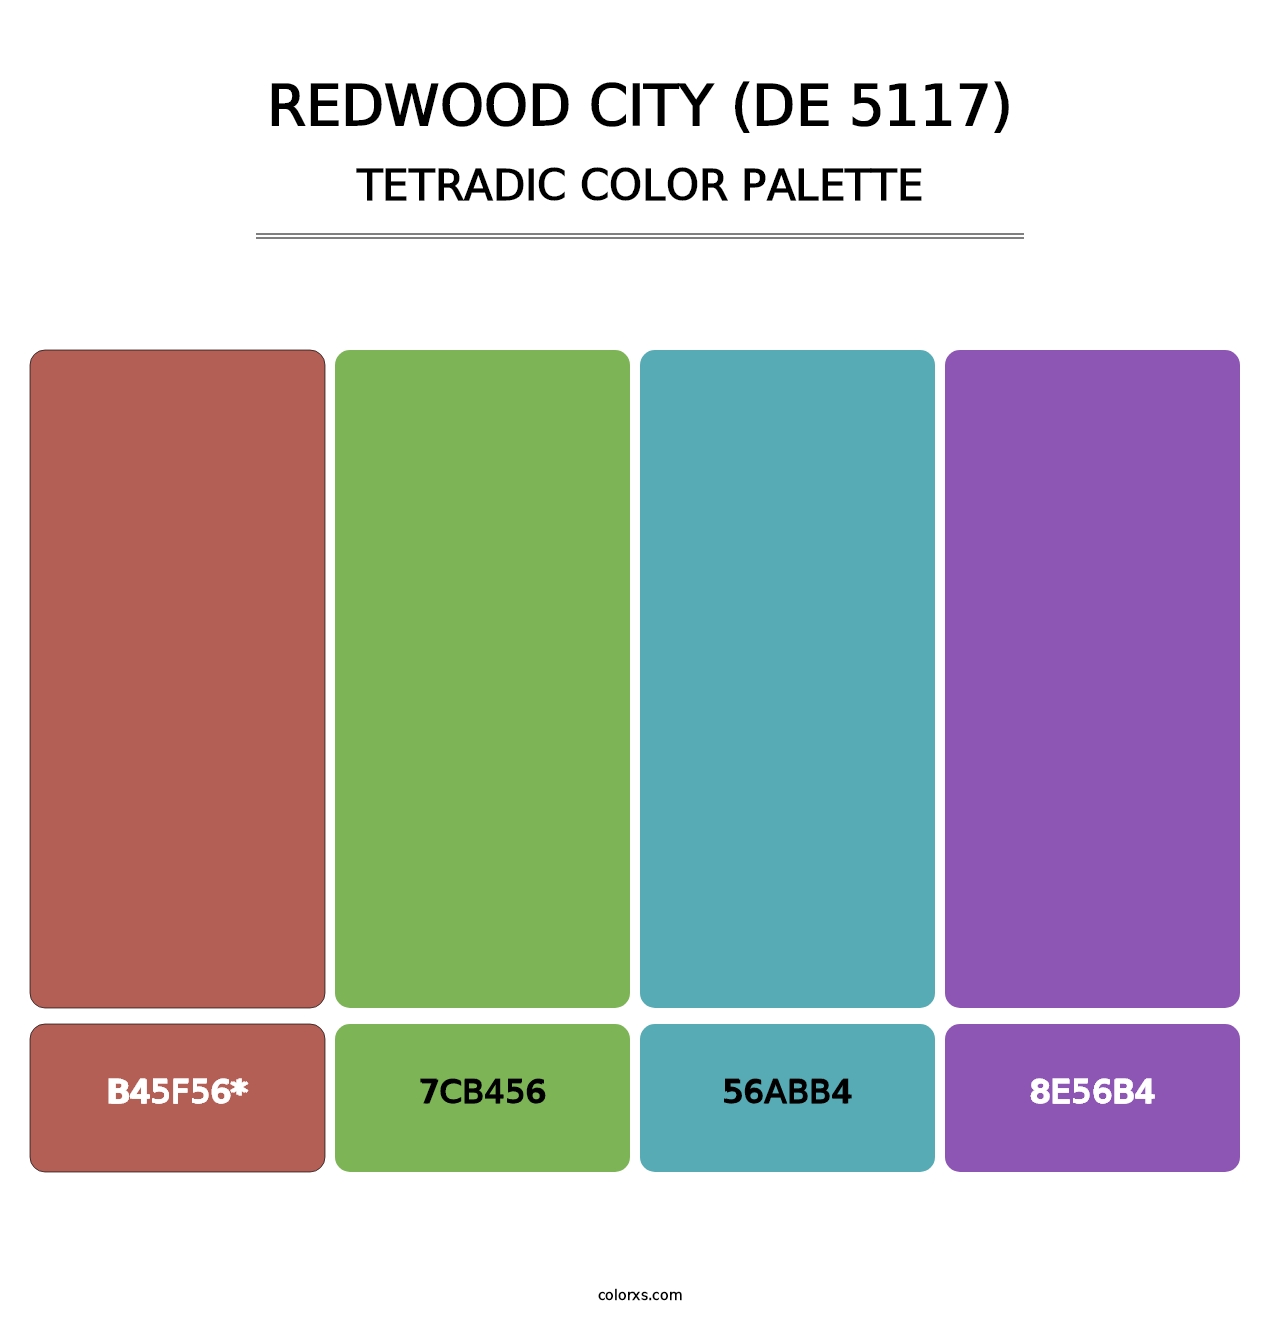 Redwood City (DE 5117) - Tetradic Color Palette